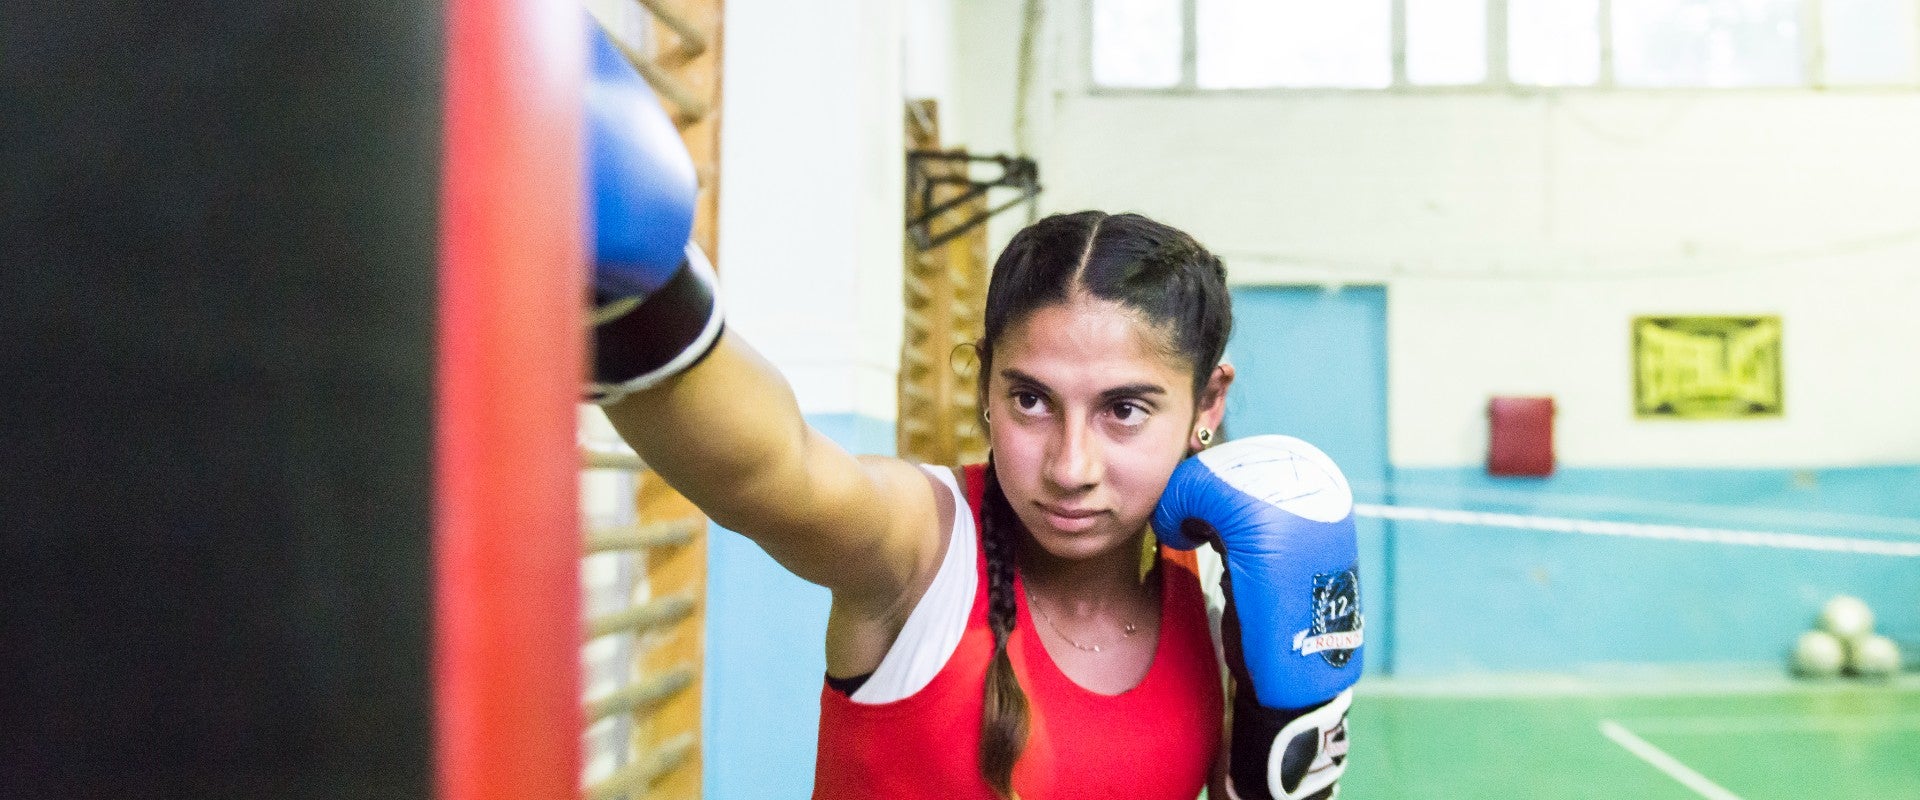 Stela est en huitième année et son rêve est de devenir championne du monde de boxe. Photo : ONU Femmes Moldavie/Diana Savina.